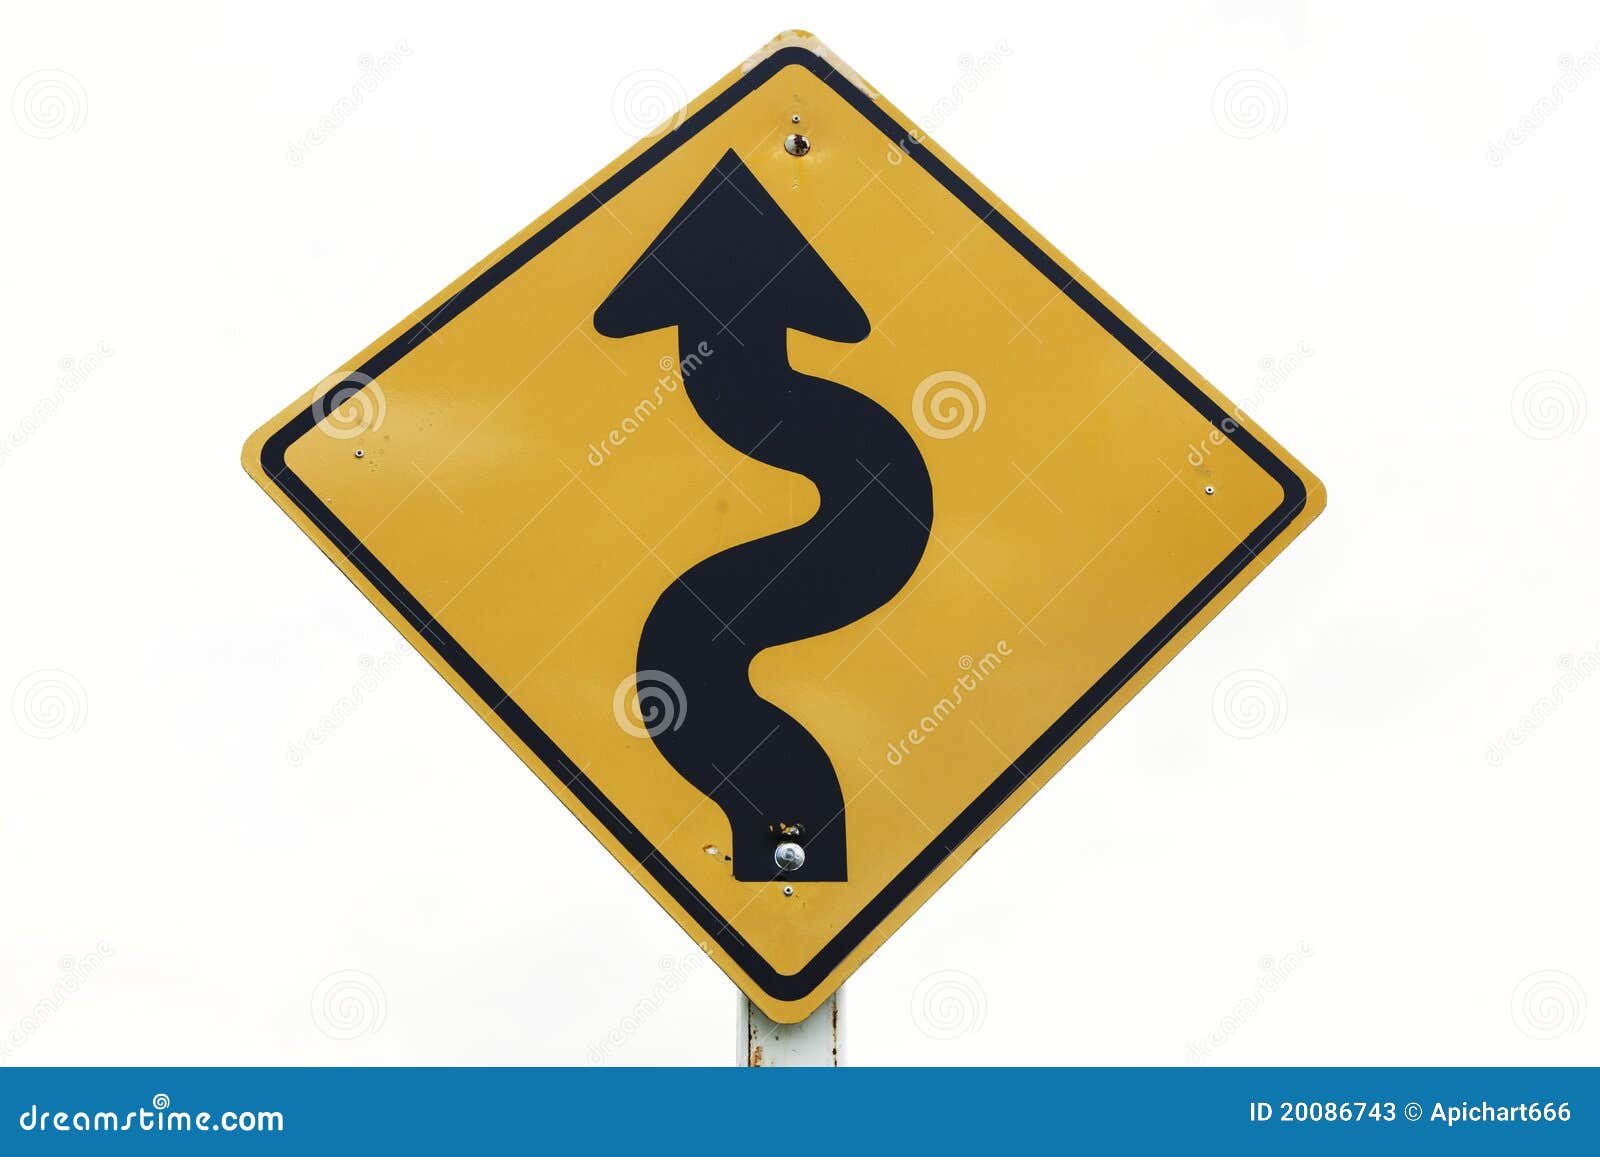 curvy road sign